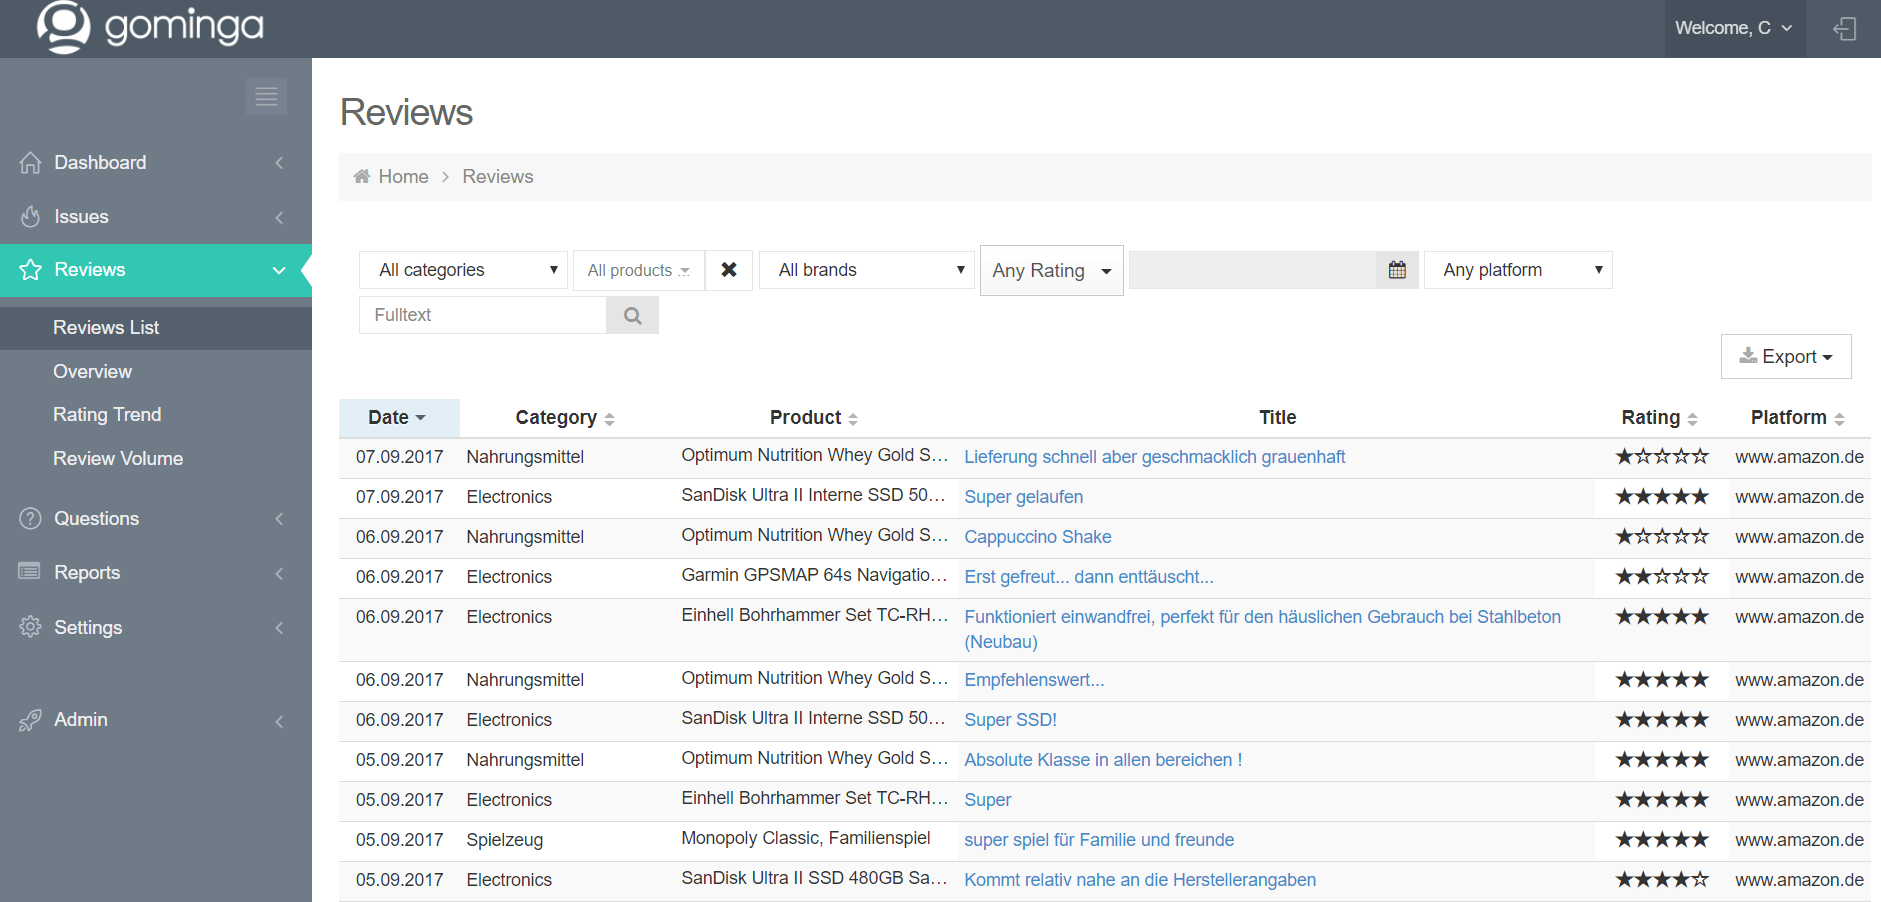 gominga-review-tool-screenshot